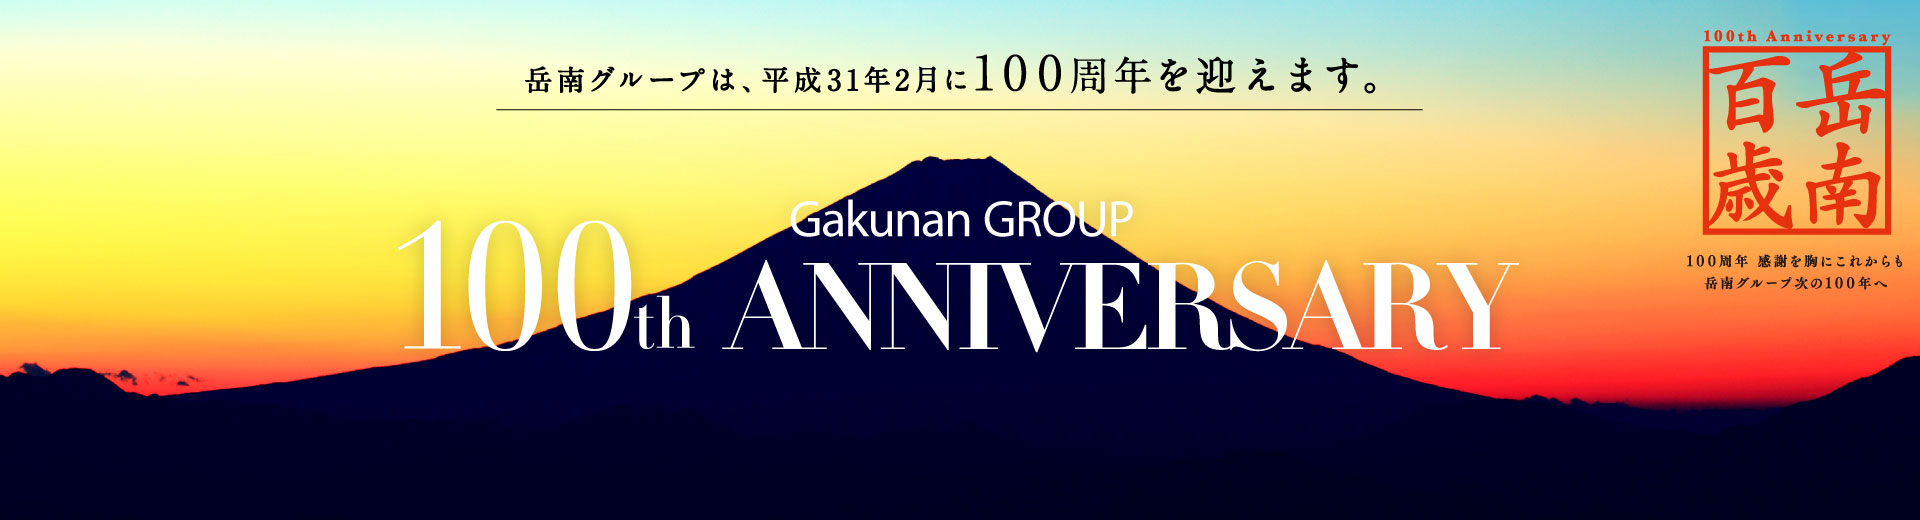 岳南グループは、平成31年2月に100周年を迎えます。